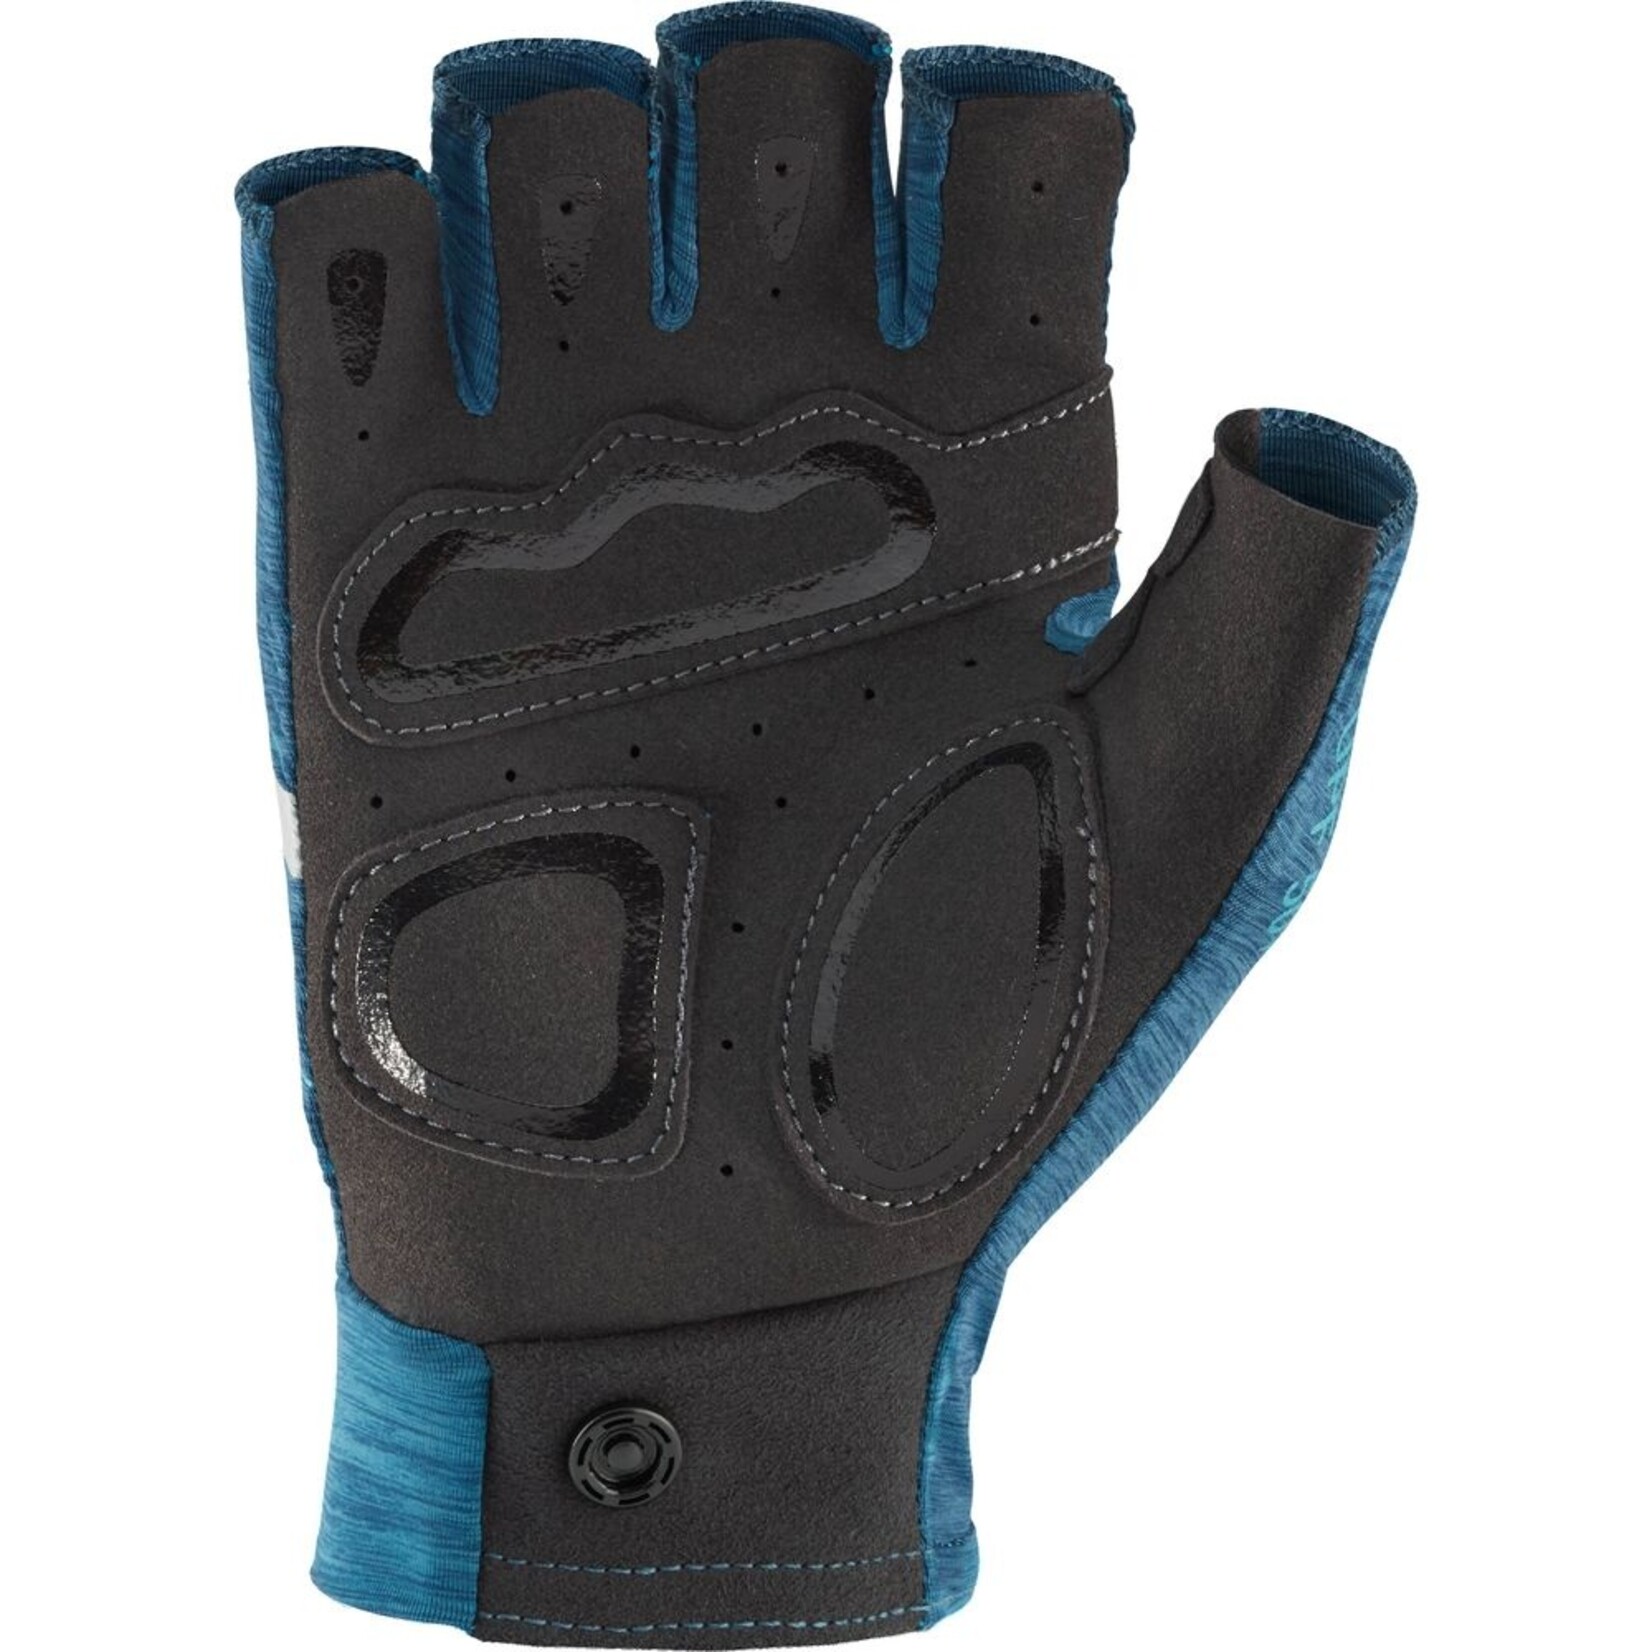 NRS - Men's Boater's Gloves